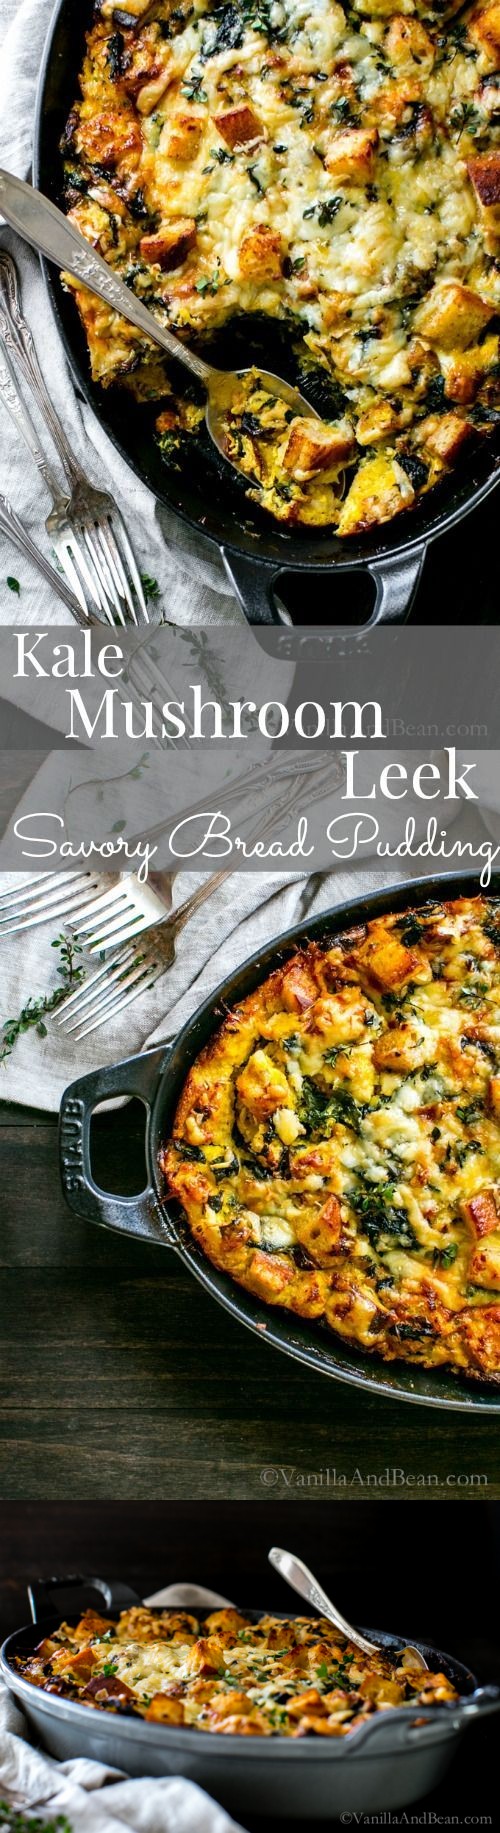 Kale, Mushroom, Leek Savory Bread Pudding